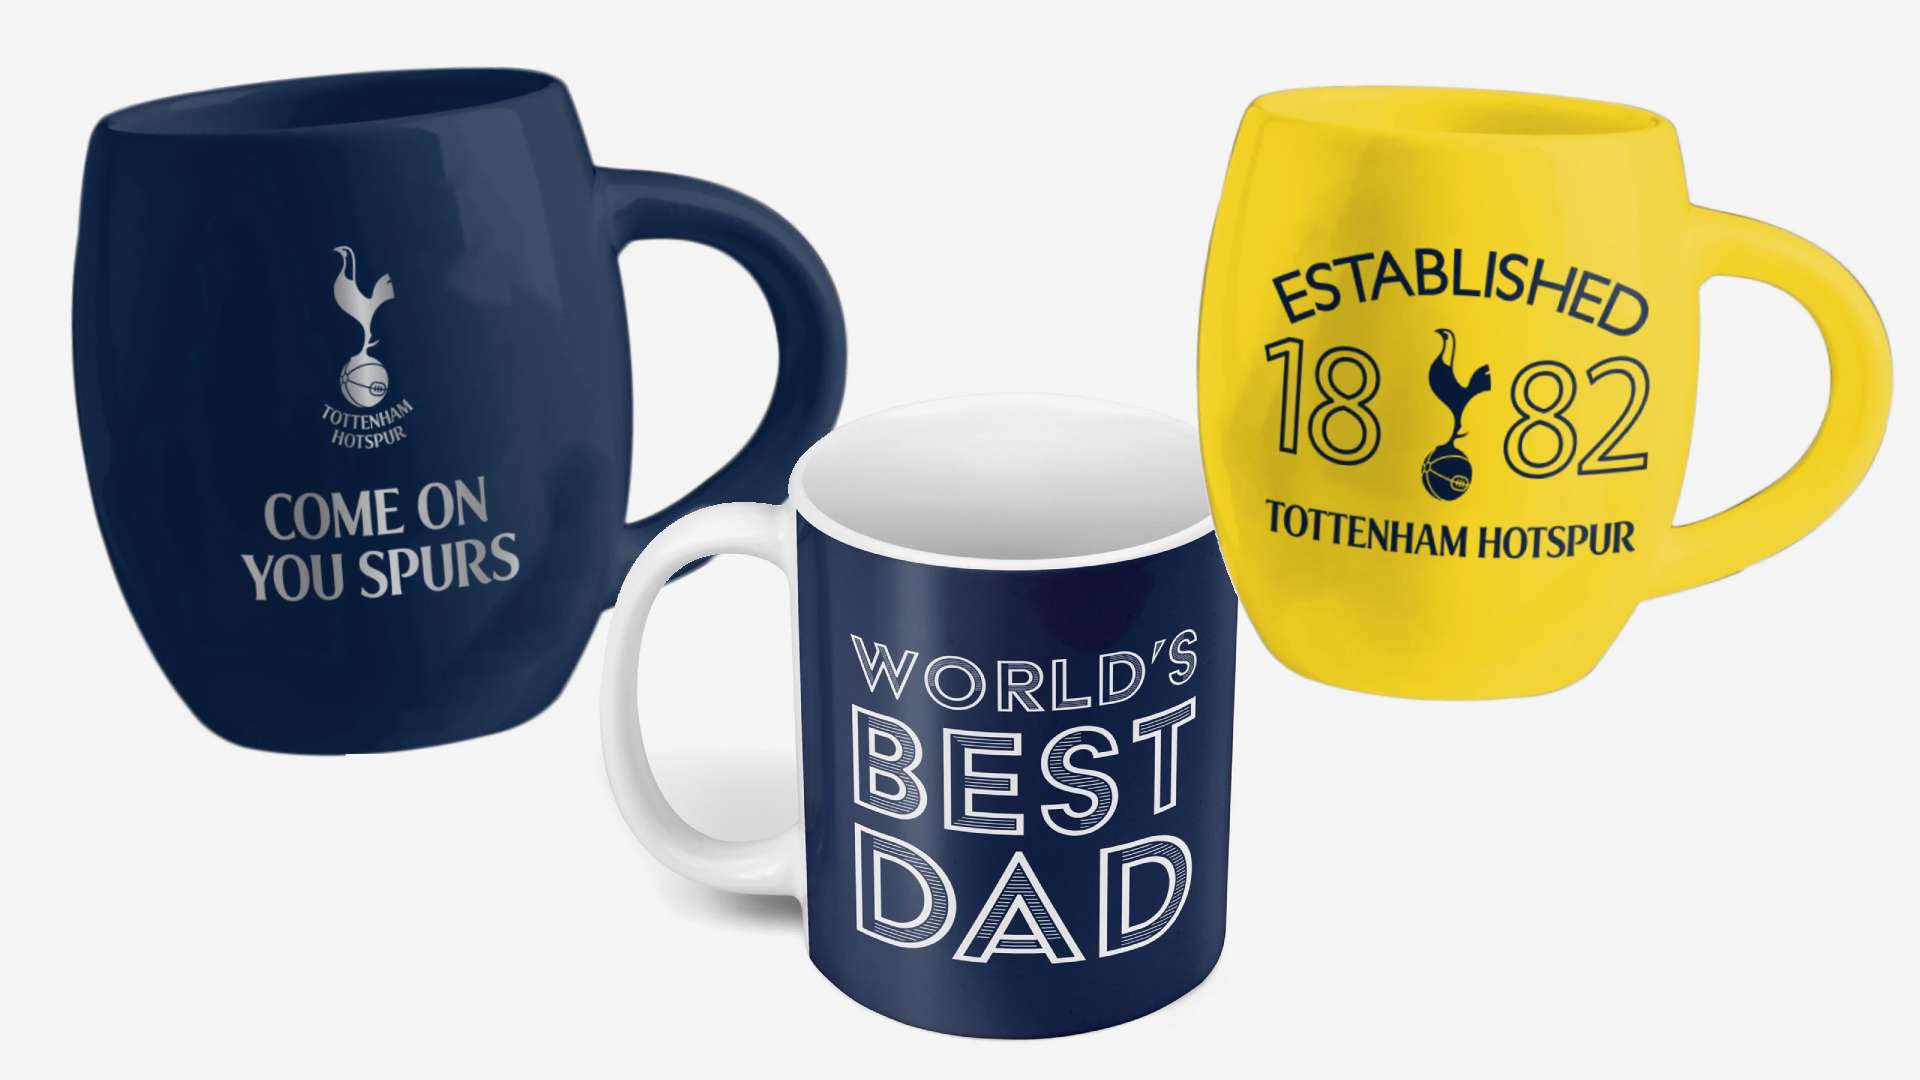 7 Tottenham foco mugs